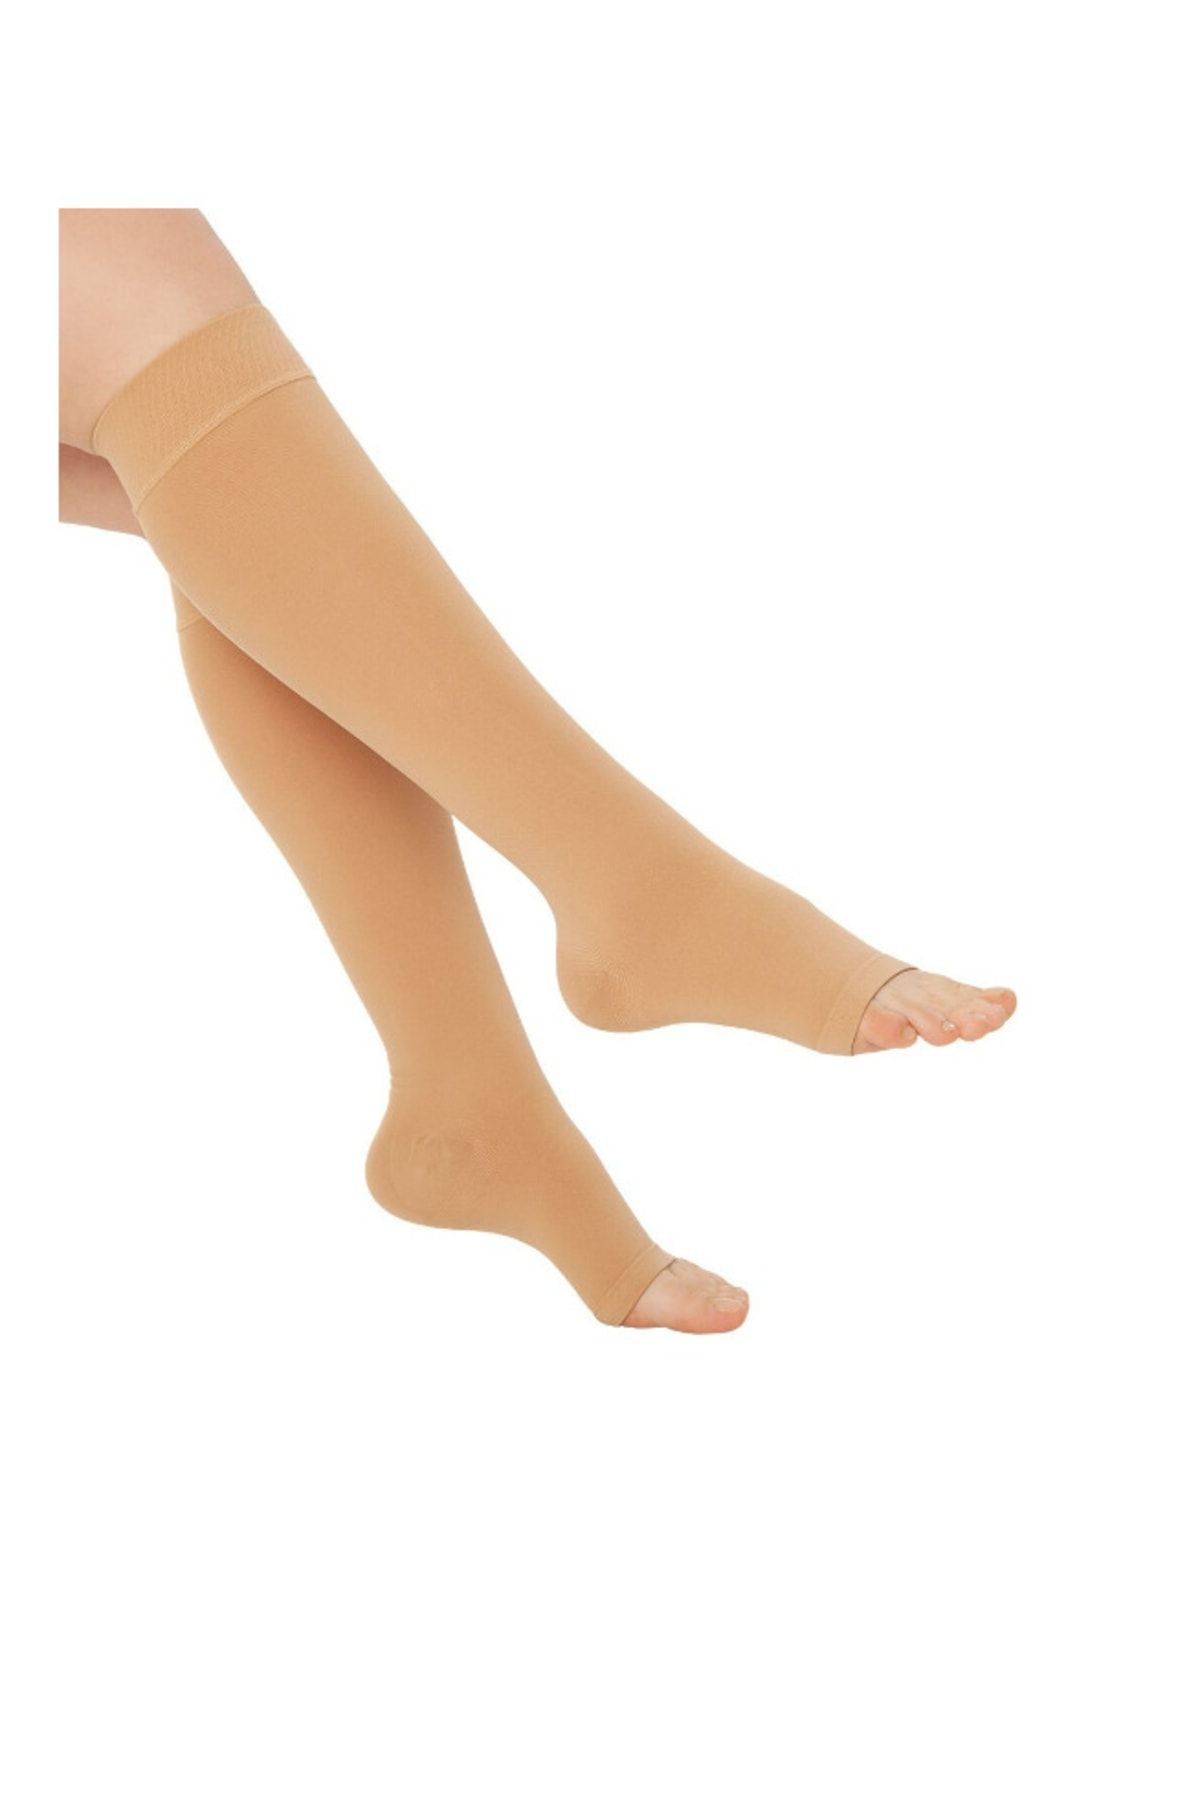 MEDİFORM Diz Altı Çorabı Burnu Açık (bej Renk) Orta Basınç Ccl2 (çift Bacak)